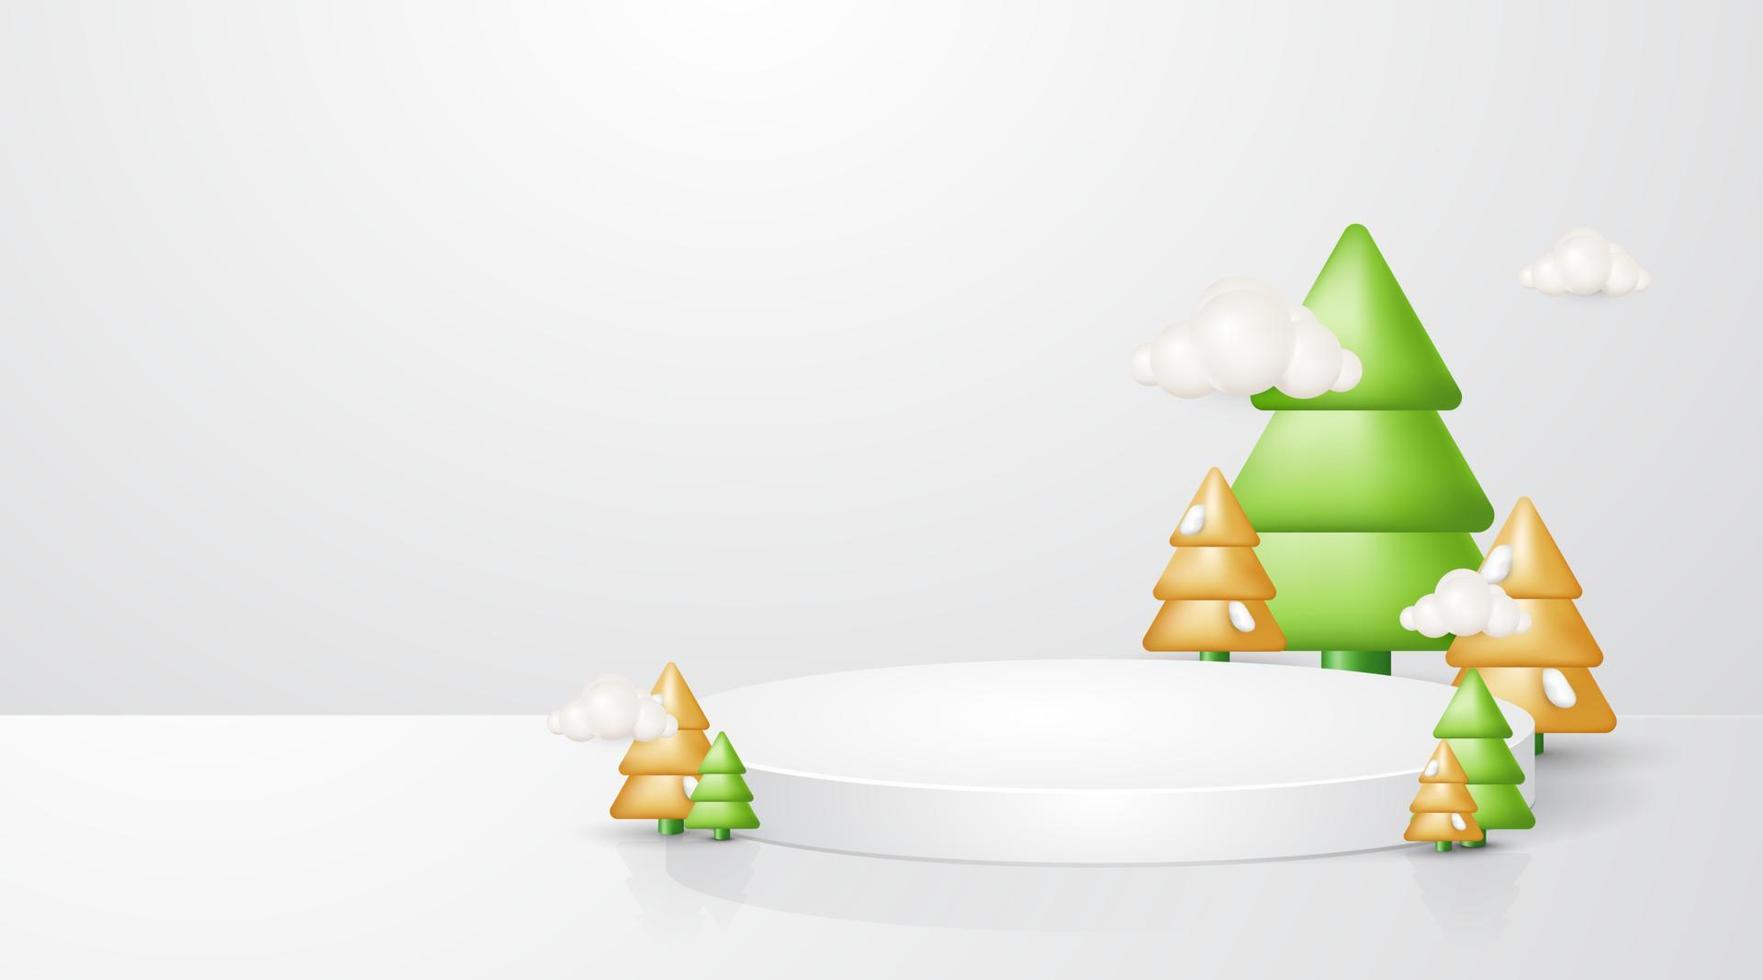 plantilla de navidad 3d realista. pedestal o soporte de podio para exhibir productos de exhibición. decoración del árbol de navidad sobre fondo blanco vector